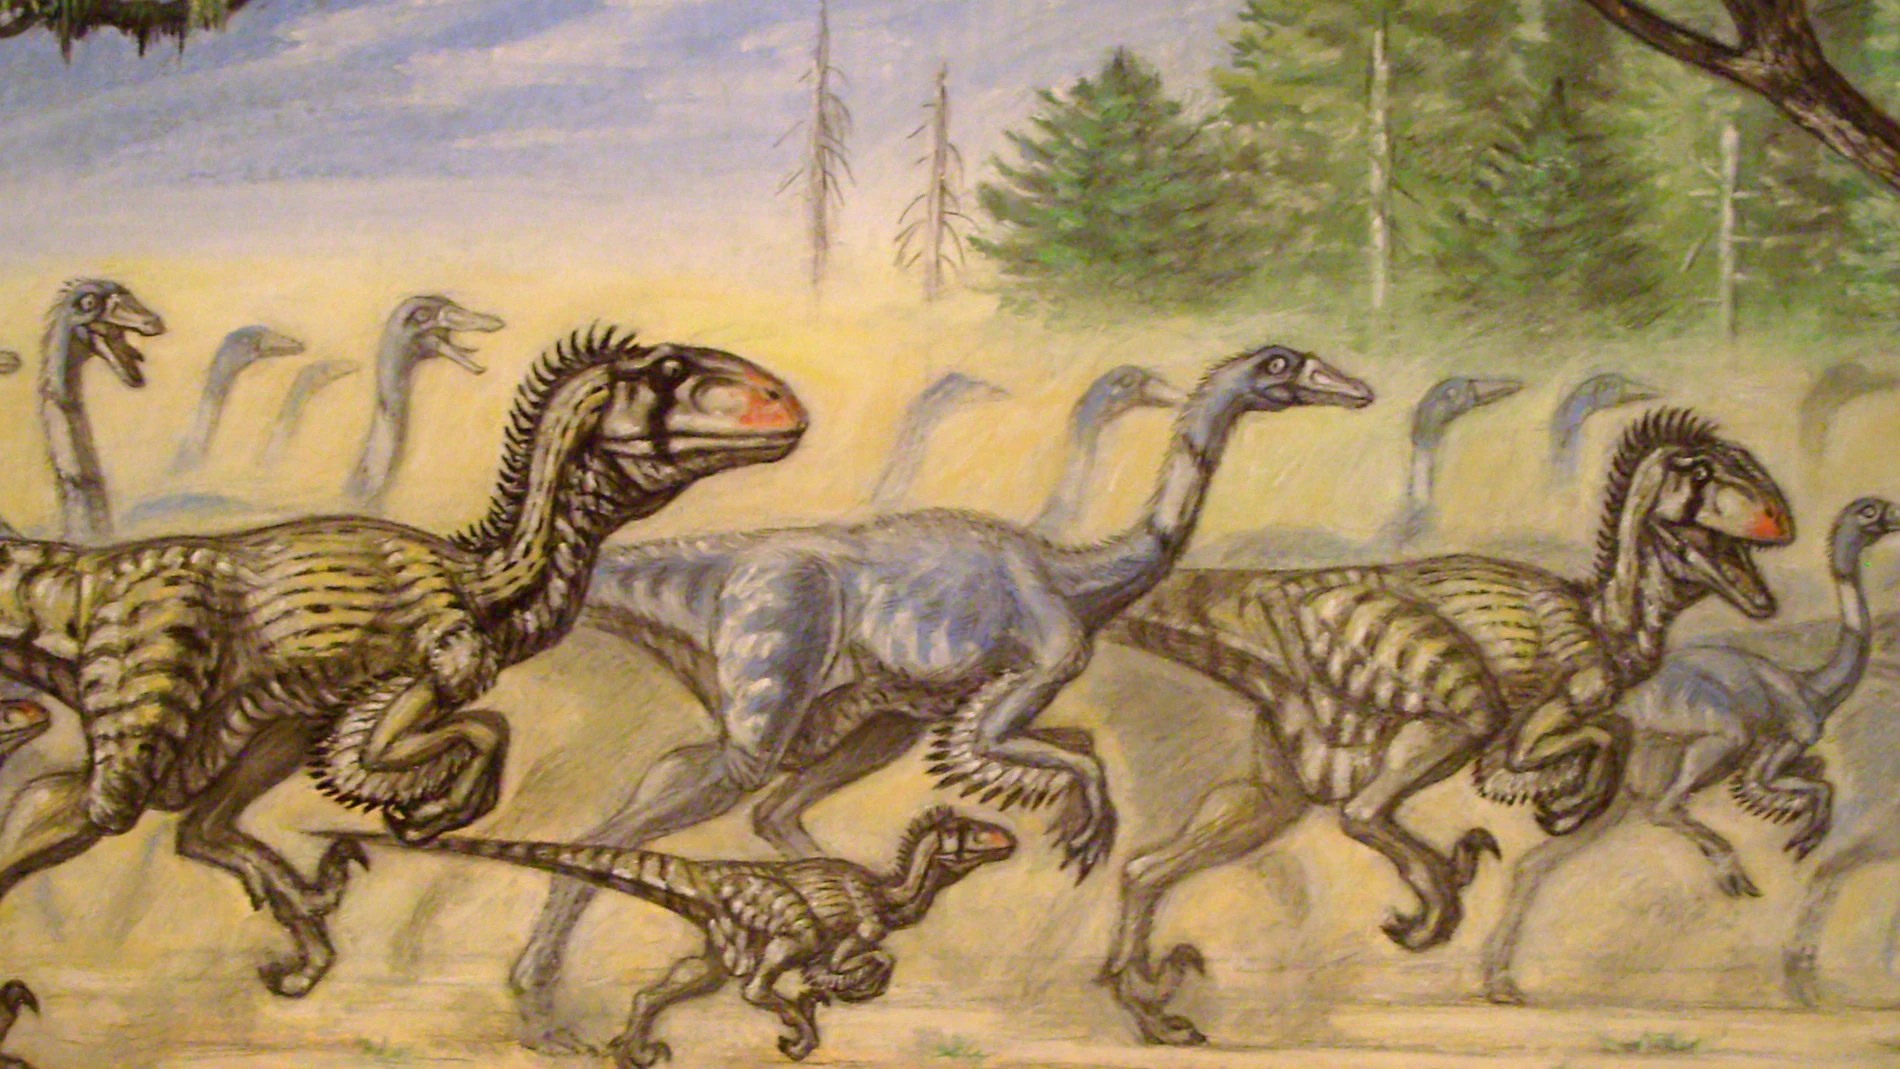 La imagen muestra a una manada de dinosaurios herbívoros, probablemente Gallimimus, acosados por un grupo de Utahraptor.